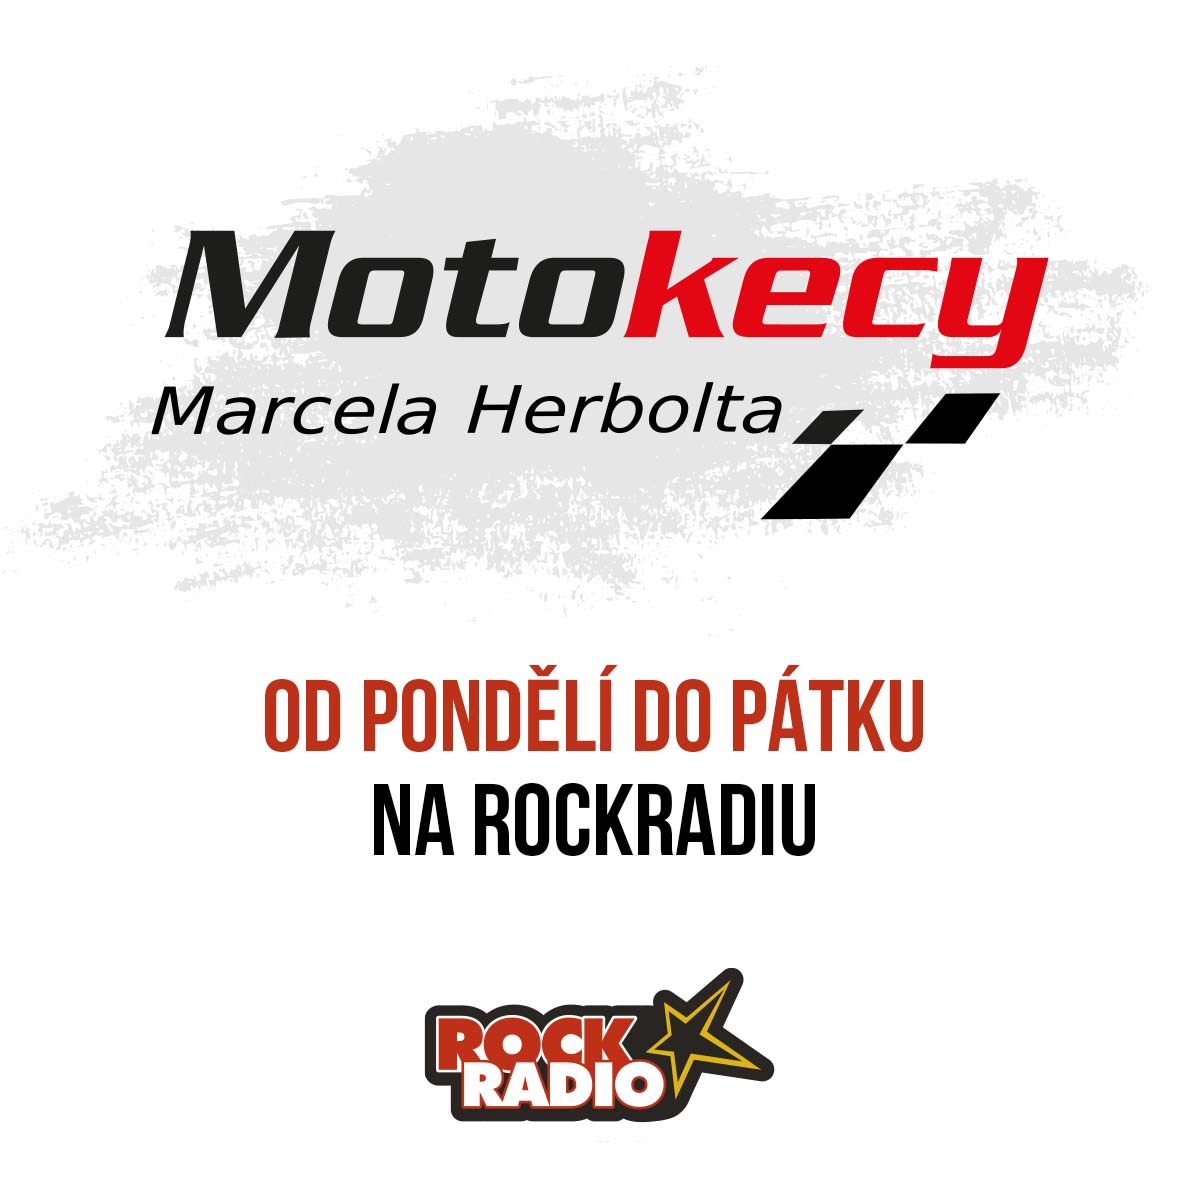 Motokecy Marcela Herbolta na pondělí 16. října